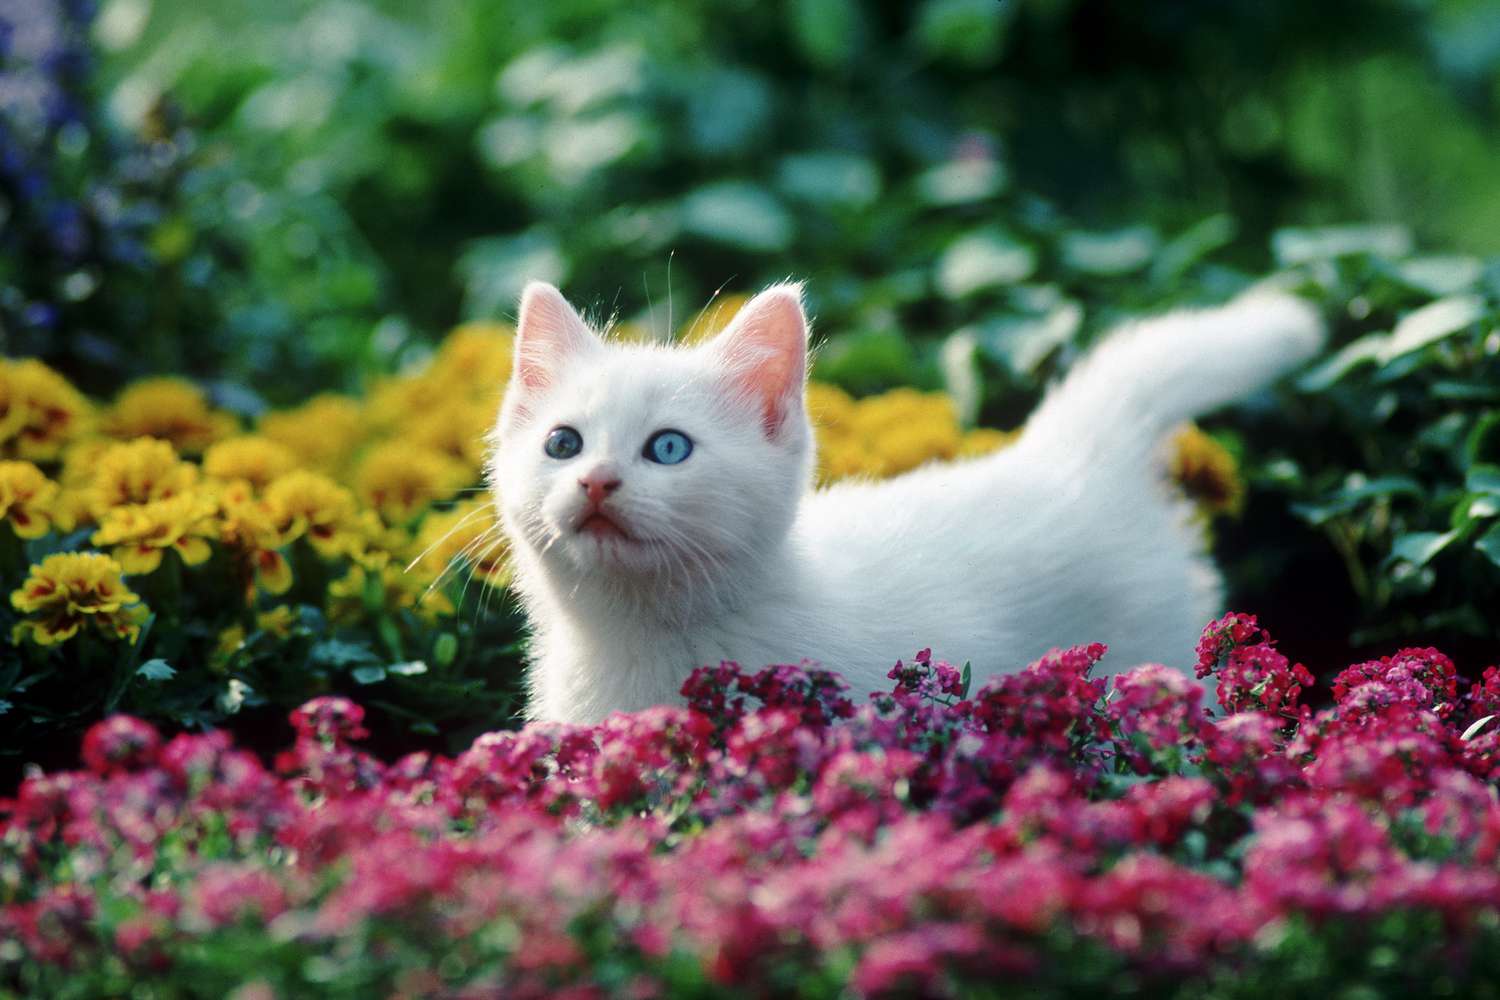 un gattino bianco con gli occhi azzurri si trova in un campo o fiori rossi e gialli